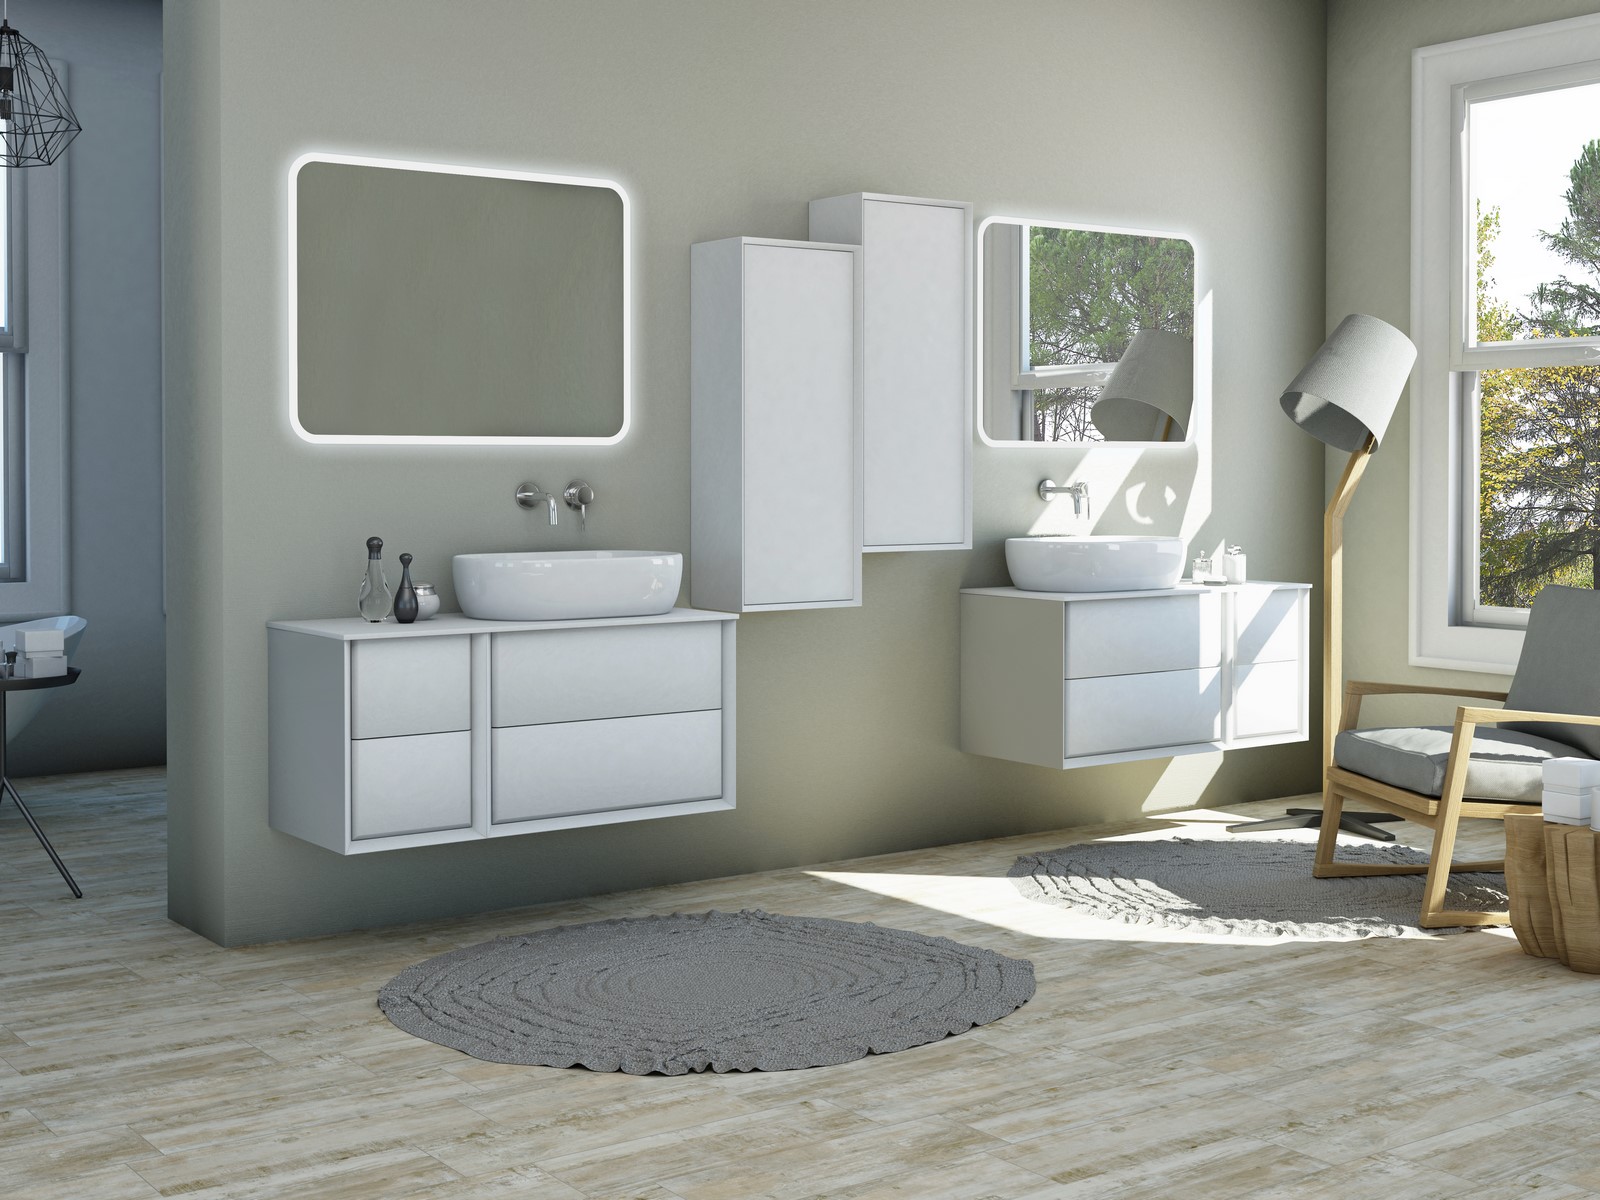 Wall-hung-bathroom-vanity-Best-6_1542125103_581